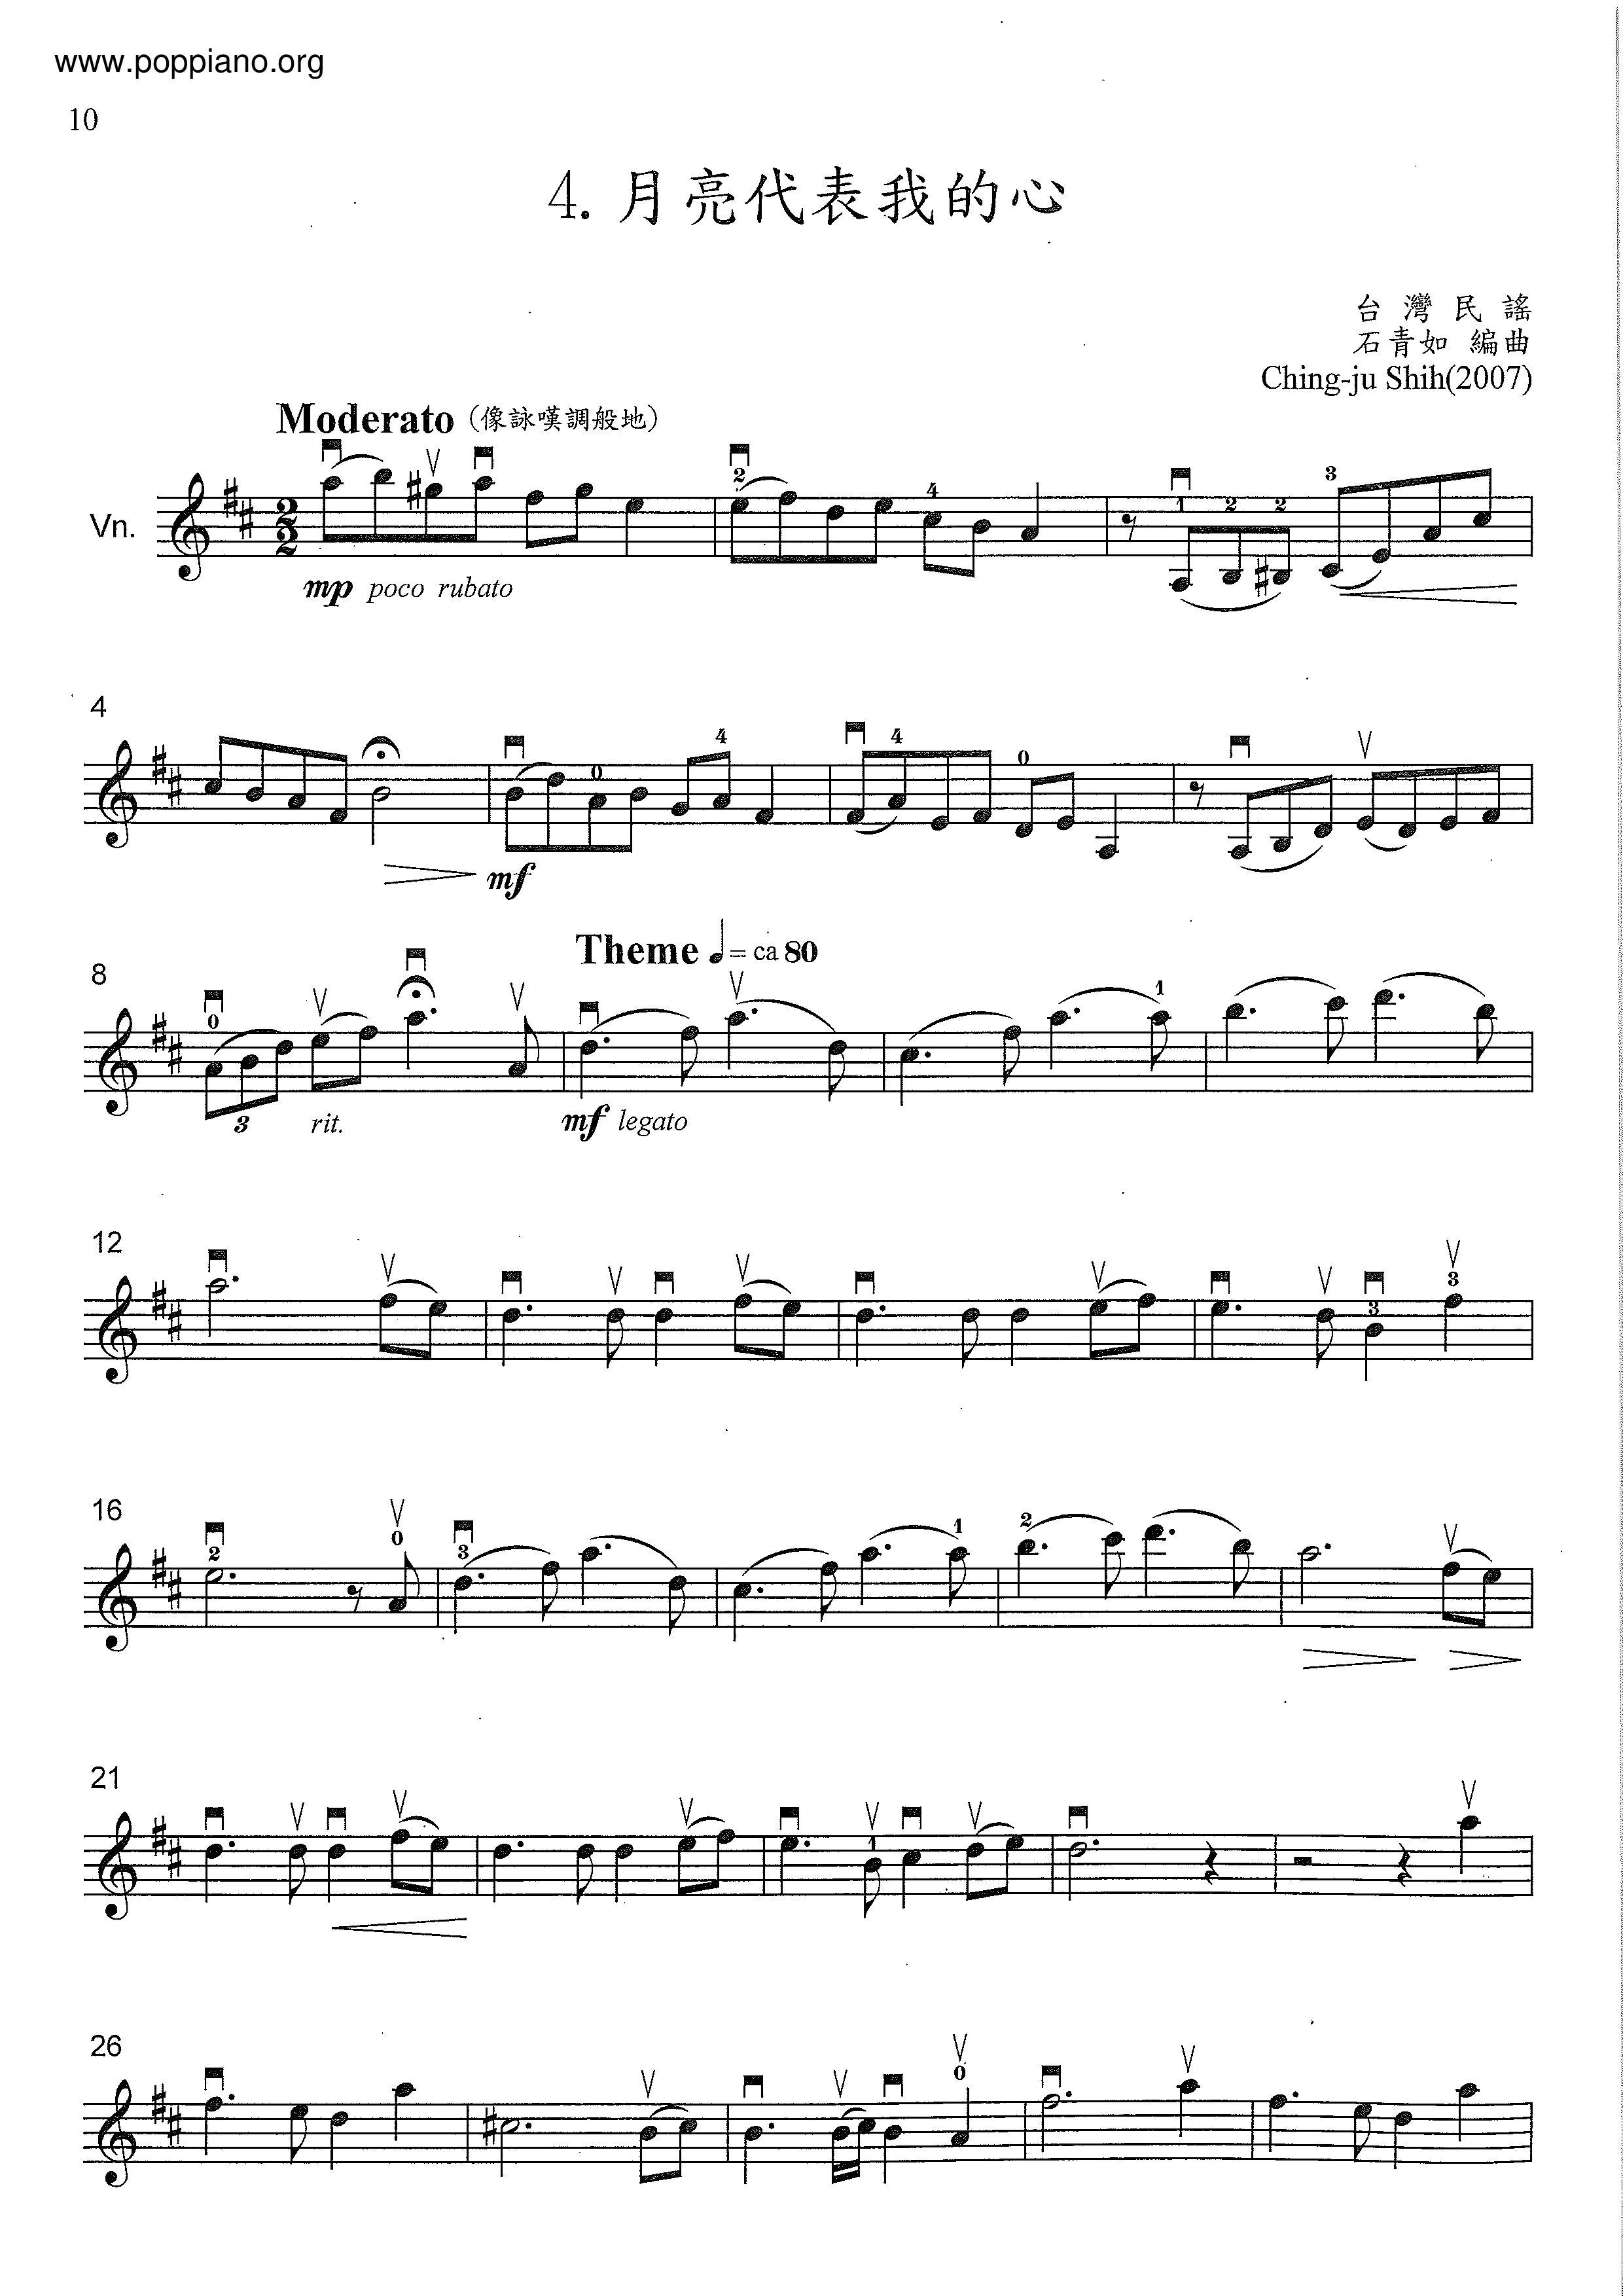 ★ 邓丽君-月亮代表我的心 总谱pdf-香港流行钢琴协会琴谱下载 ★